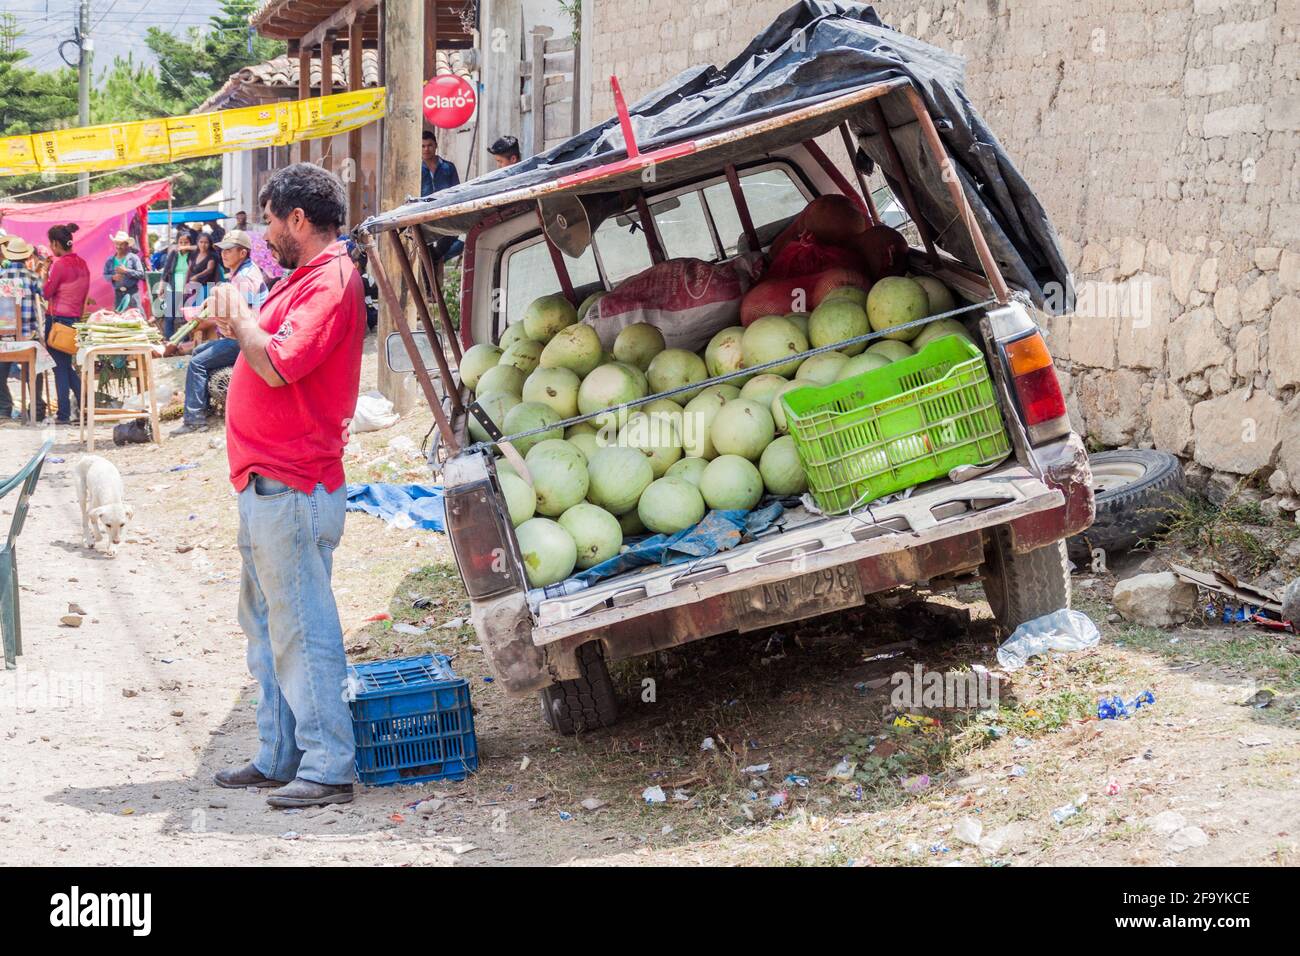 SAN MANUEL DE COLOHETE, HONDURAS - 15. APRIL 2016: Wassermelonenverkäufer auf einem Markt. Zweimal im Monat gibt es in diesem Dorf einen großen Markt. Stockfoto